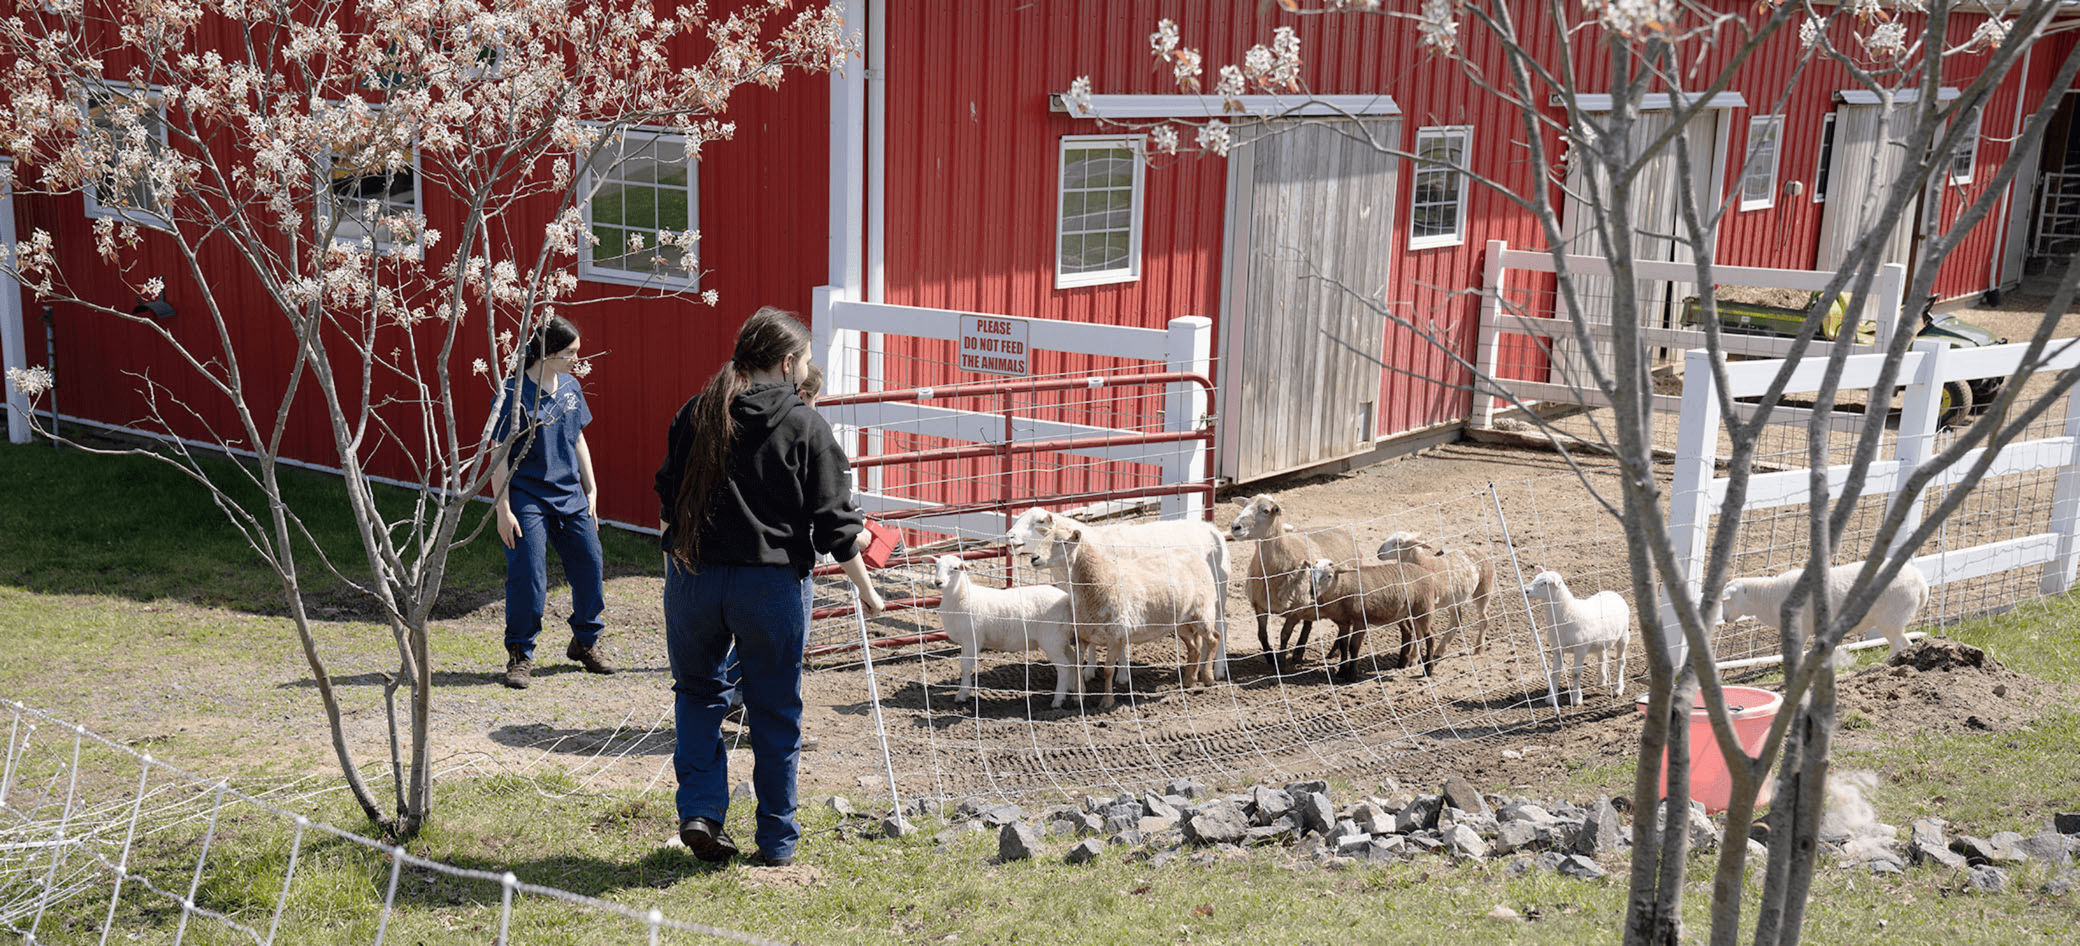 Трое учеников выпускают из загона группу возбужденных овец.